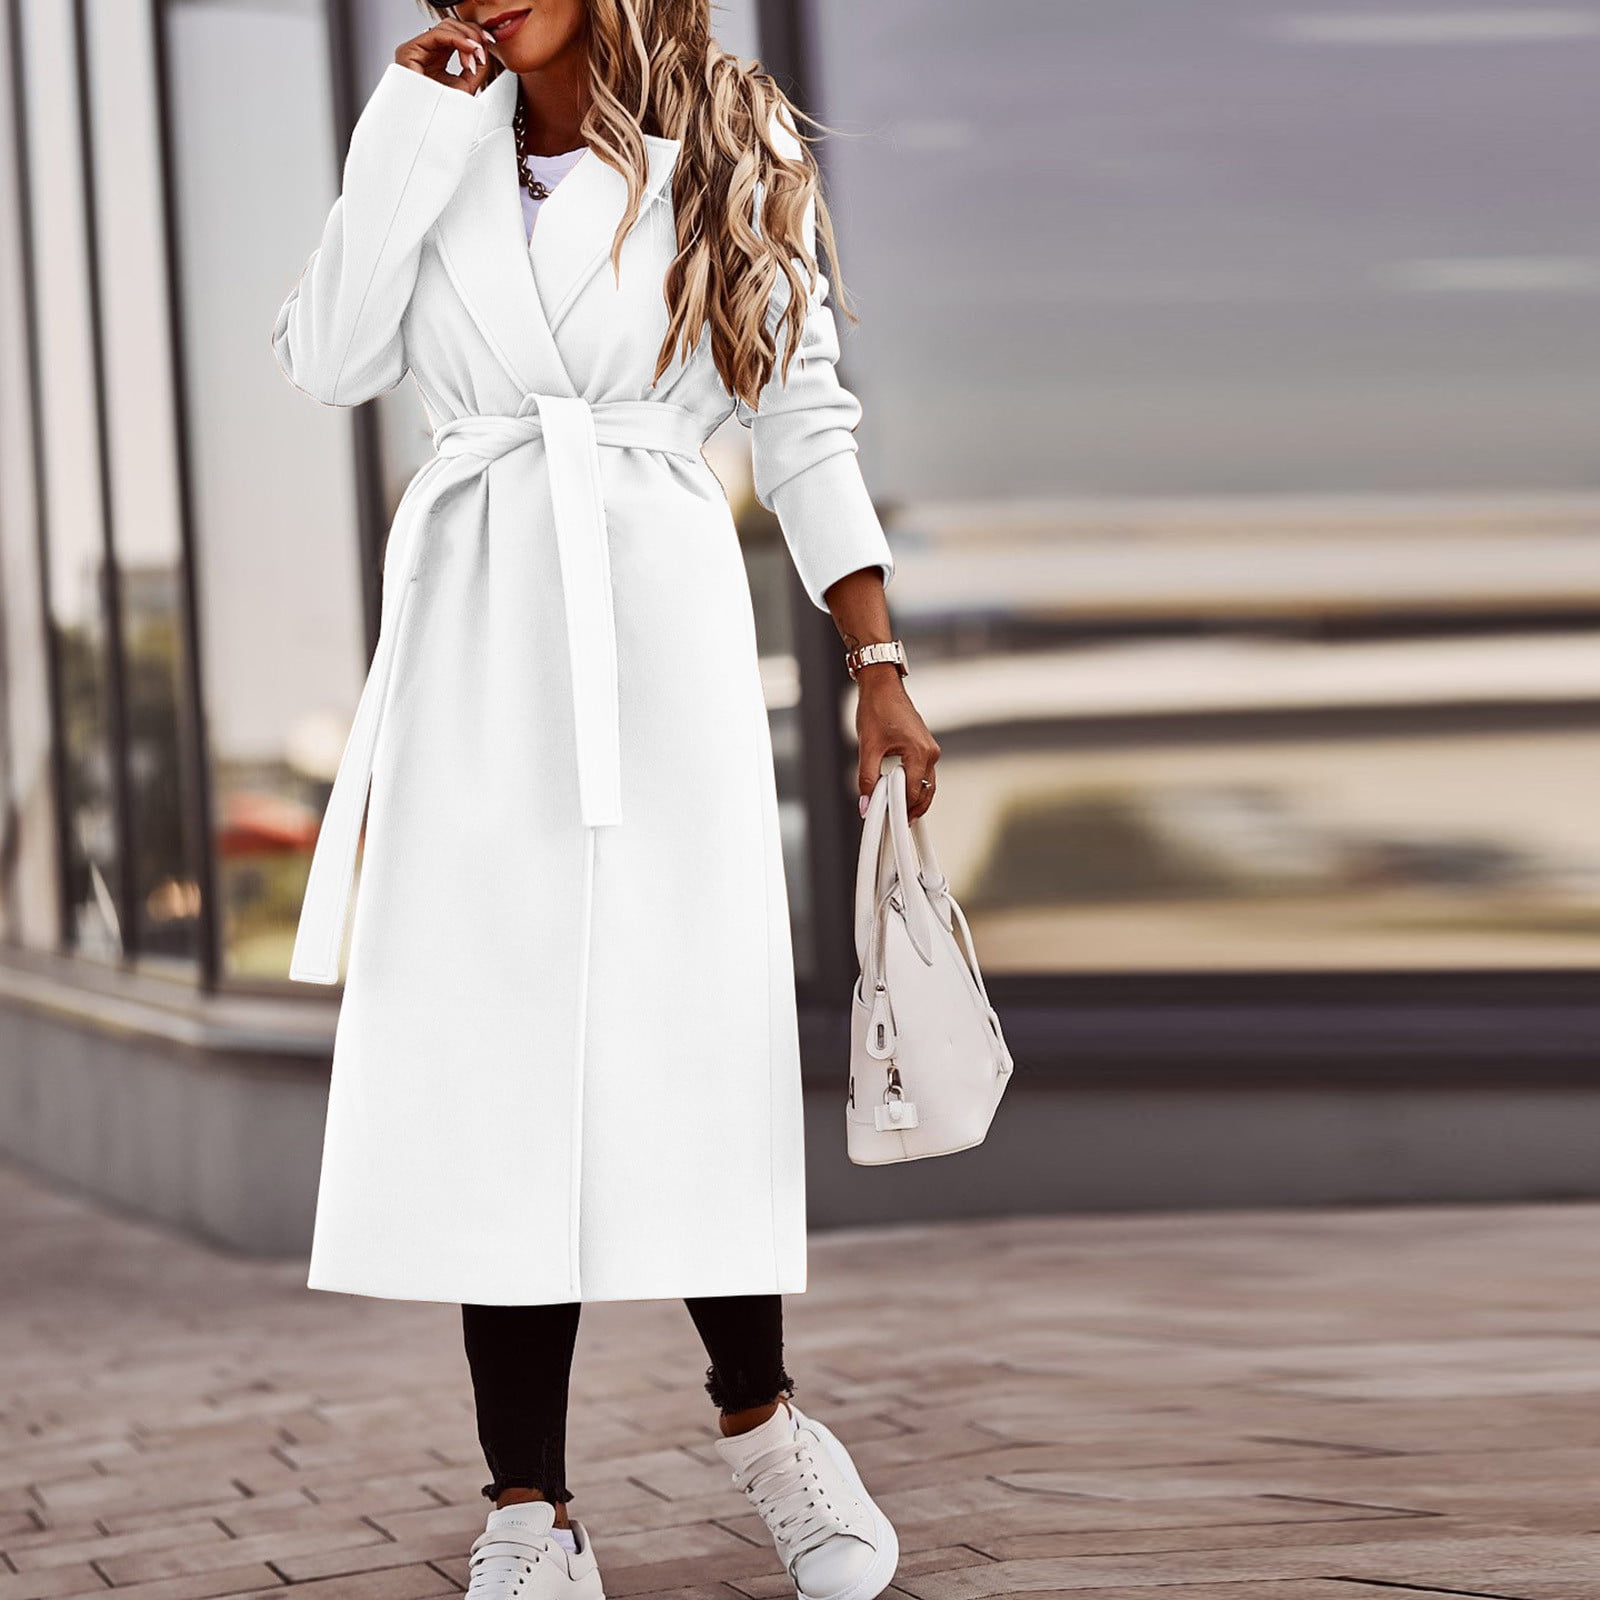 MRULIC winter coats for women Women's Faux Wool Coat Blouse Thin Coat  Trench Long Jacket Ladies Slim Long Belt Elegant Overcoat Outwear White +  XXL